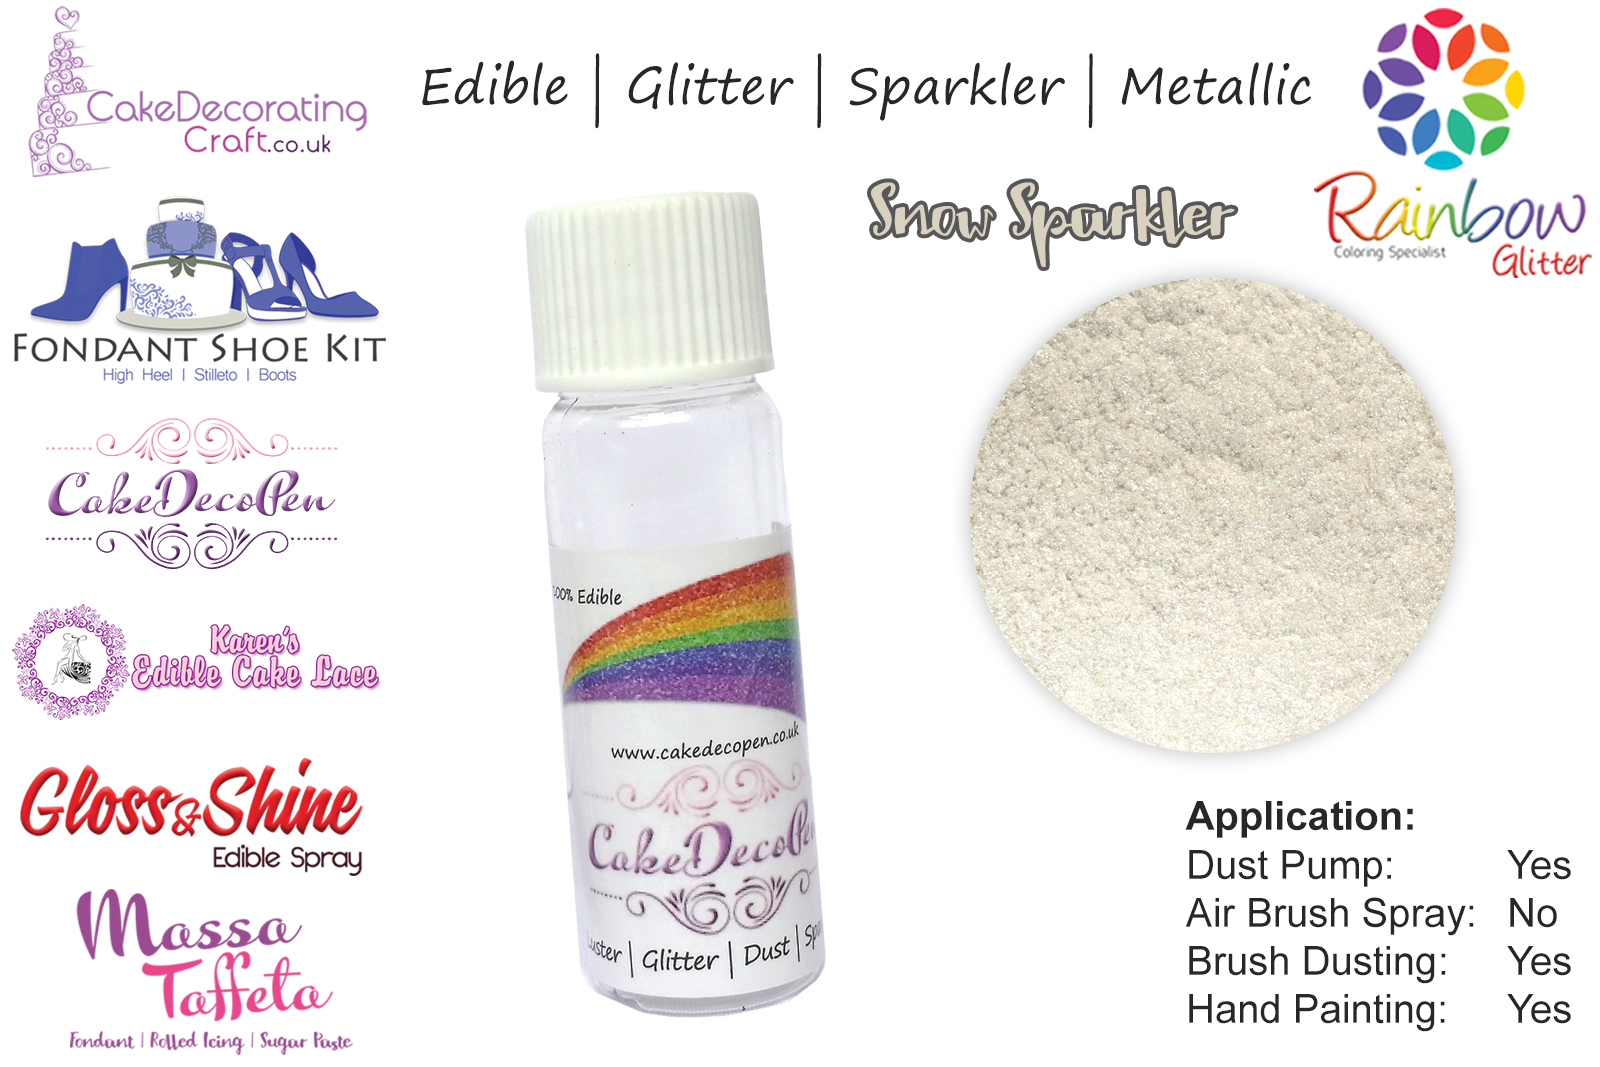 Snow Sparkler | 4 Gram Tube | Glitter | Sparkler | Metallic | 100 %Edible | Cake Craft | Great Christmas Bake Off